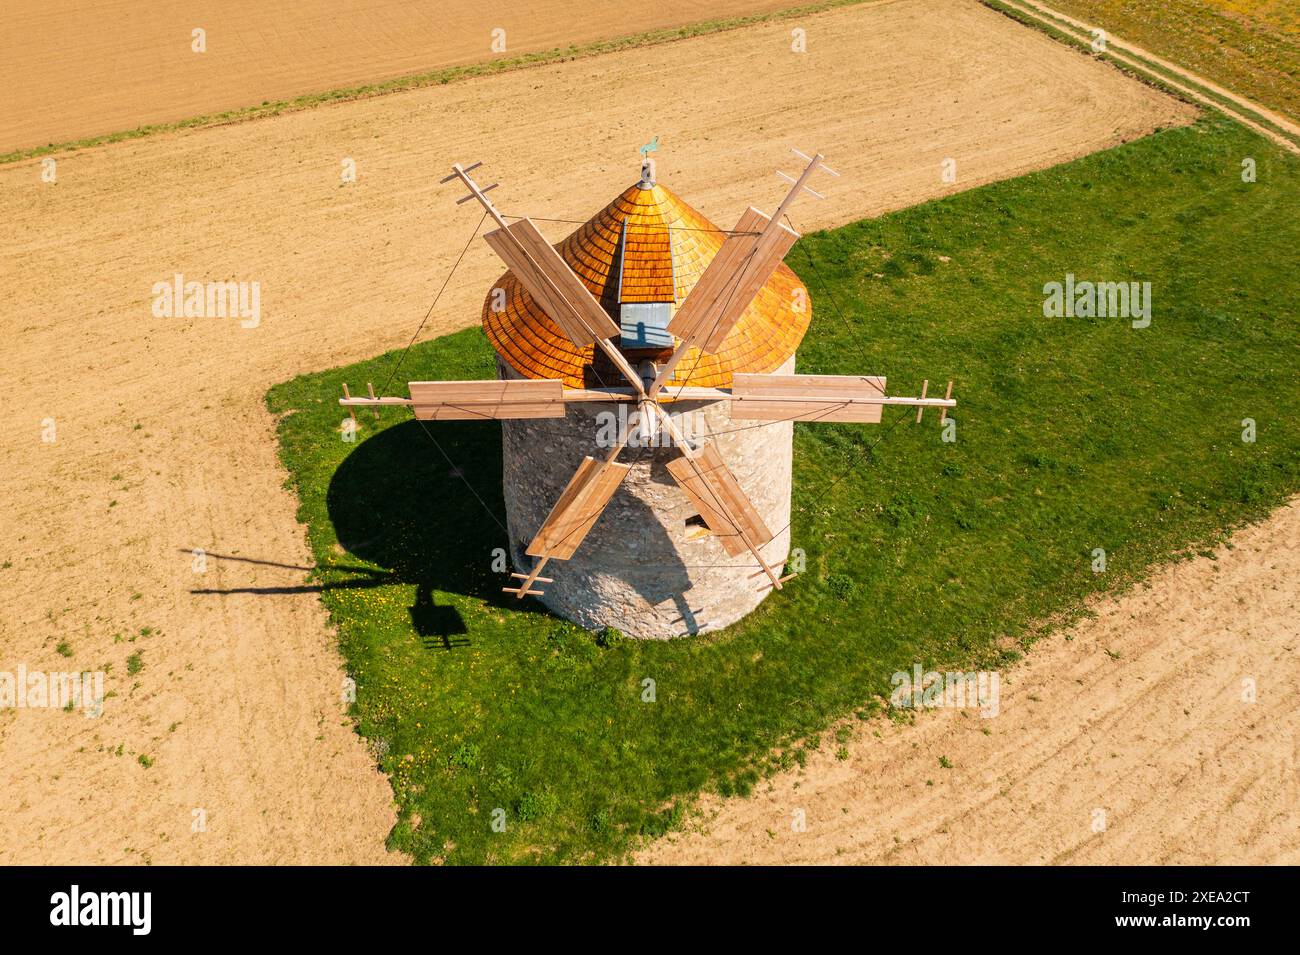 Aus der Vogelperspektive über die traditionelle Windmühle in TEs, Komitat Veszprem, Ungarn. Der ungarische Name ist Tesi szelmalmok. Stockfoto